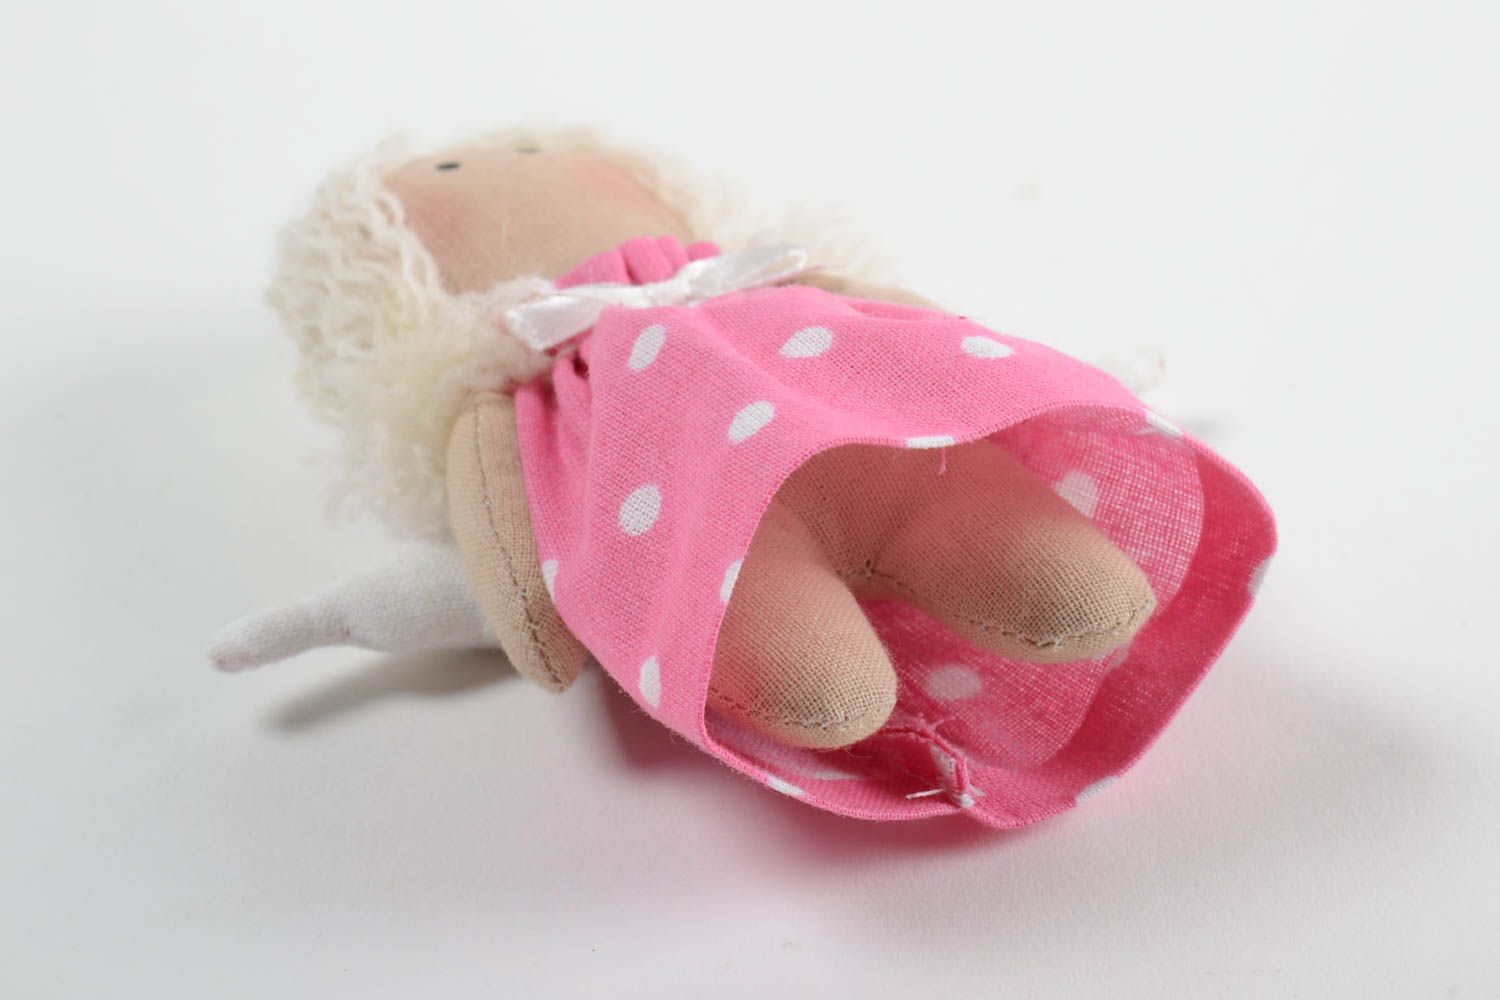 Handmade Stoff Puppe Kinder Spielzeug Engel Geschenk klein im rosa Kleid foto 4